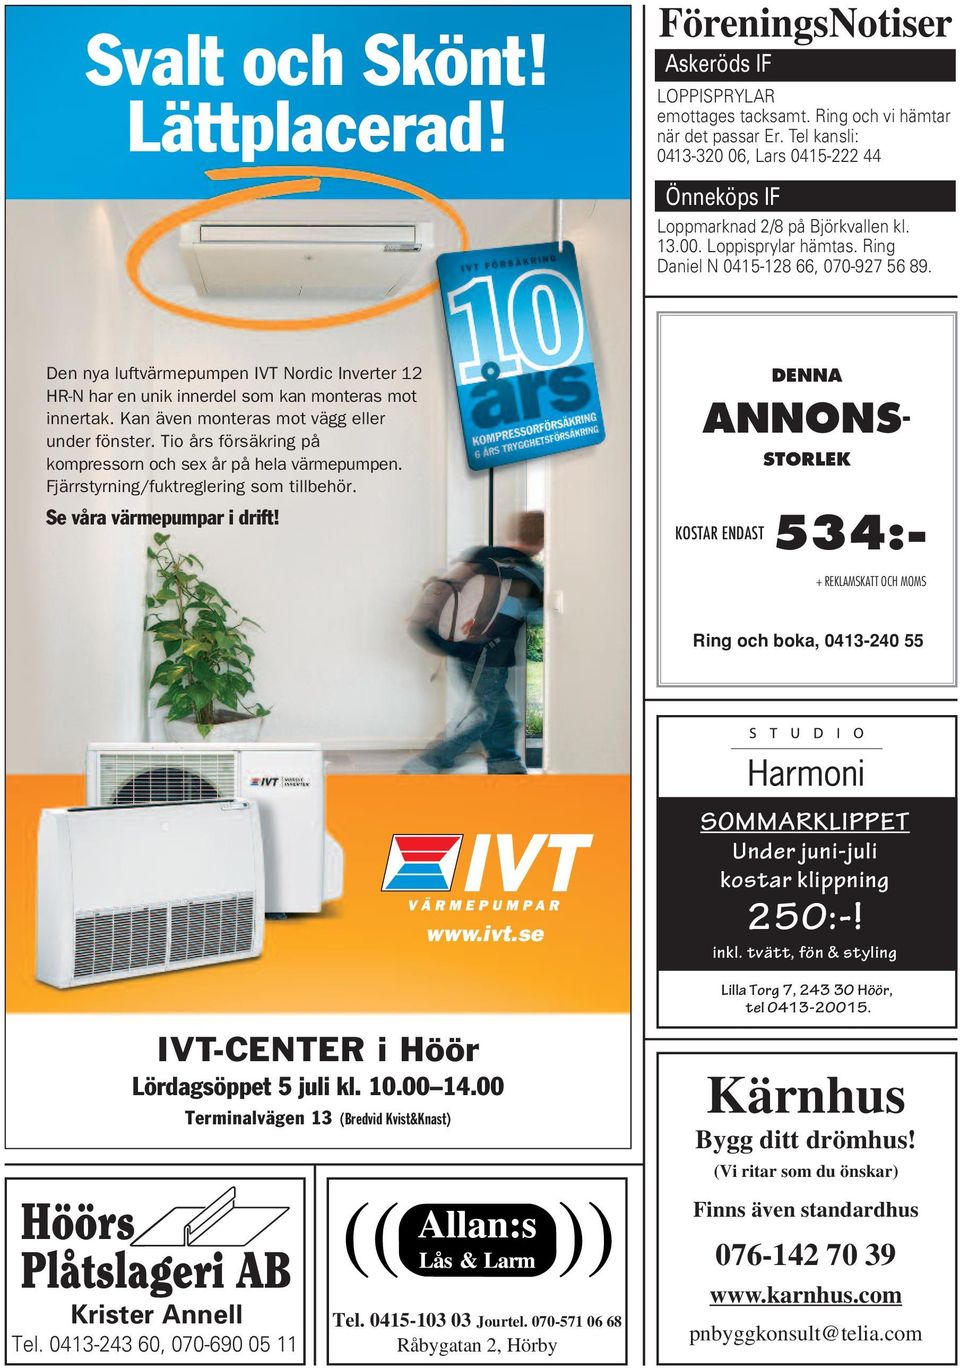 Den nya luftvärmepumpen IVT Nordic Inverter 12 HR-N har en unik innerdel som kan monteras mot innertak. Kan även monteras mot vägg eller under fönster.